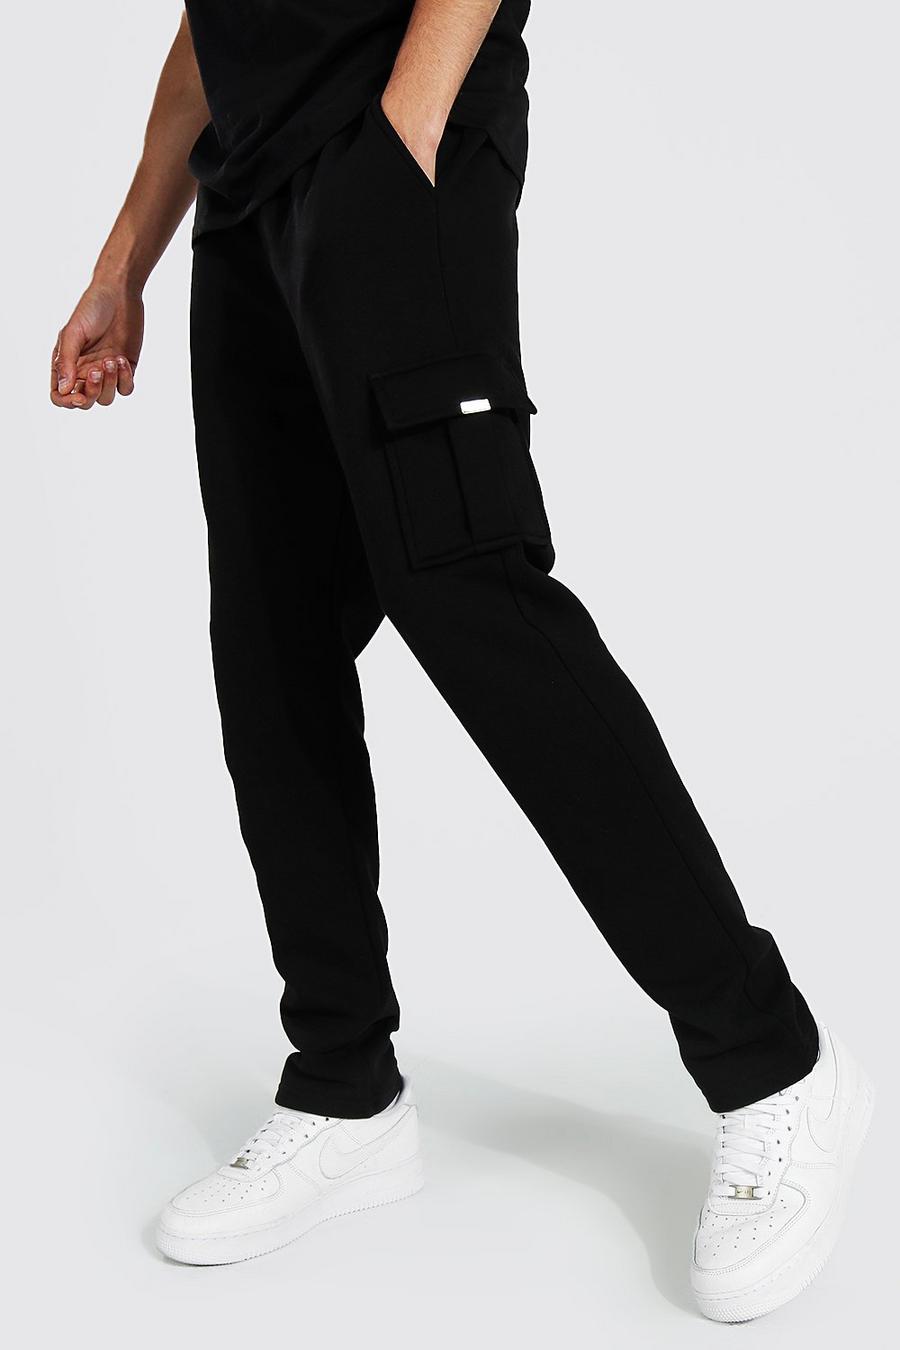 Pantaloni tuta Cargo Tall Skinny Fit con dettagli in metallo, Black nero image number 1